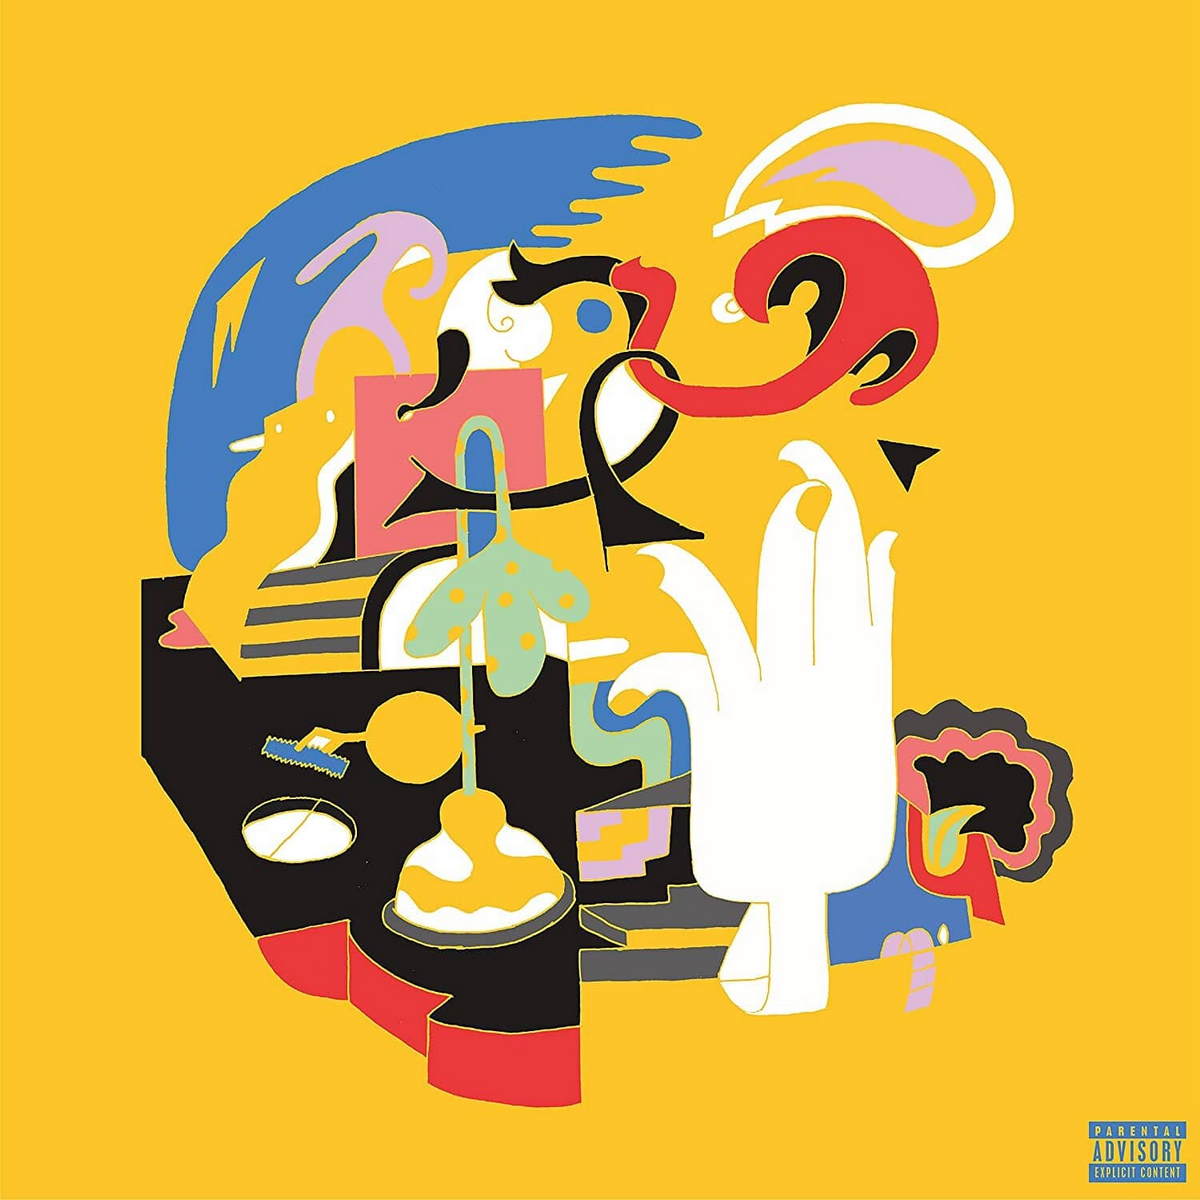 Хип-хоп WM Mac Miller - Faces (Limited/Opaque Canary Yellow Vinyl) одиссея капитана блада региональное издание